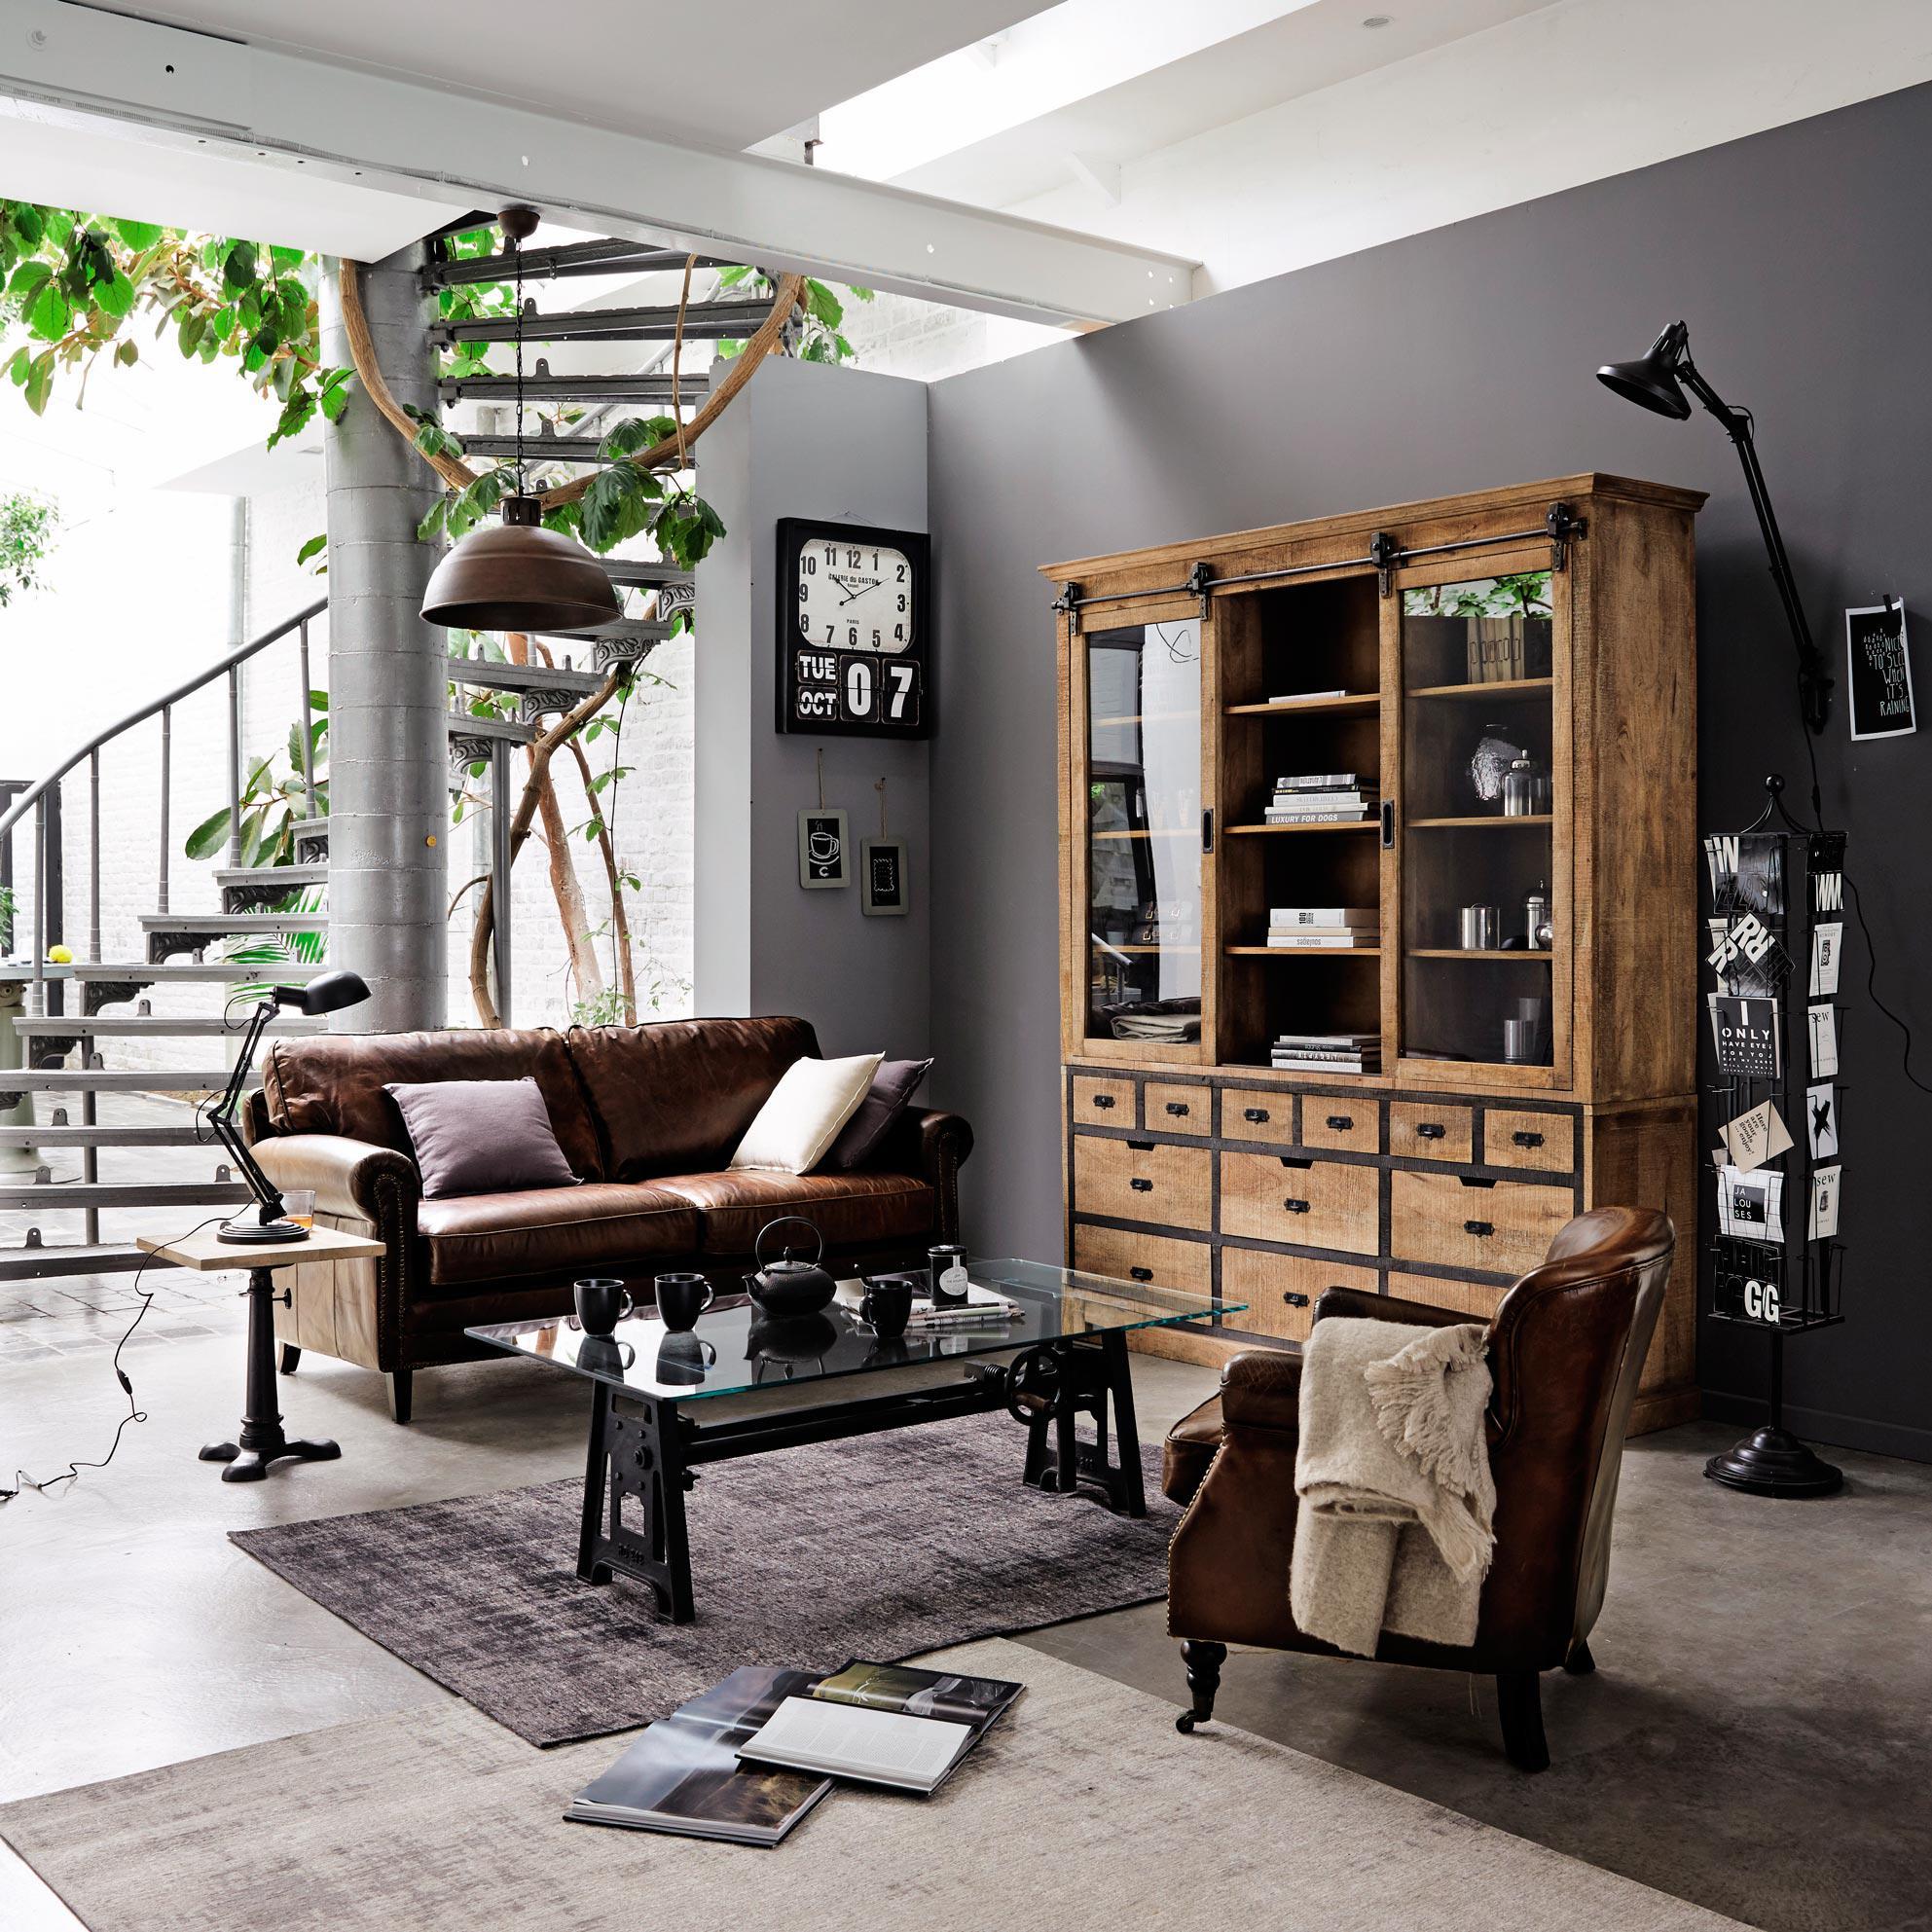 Moderner Landhausstil im Wohnzimmer #braunerledersessel #braunesledersofa #pflanzendeko #zimmergestaltung ©Maisons du Monde